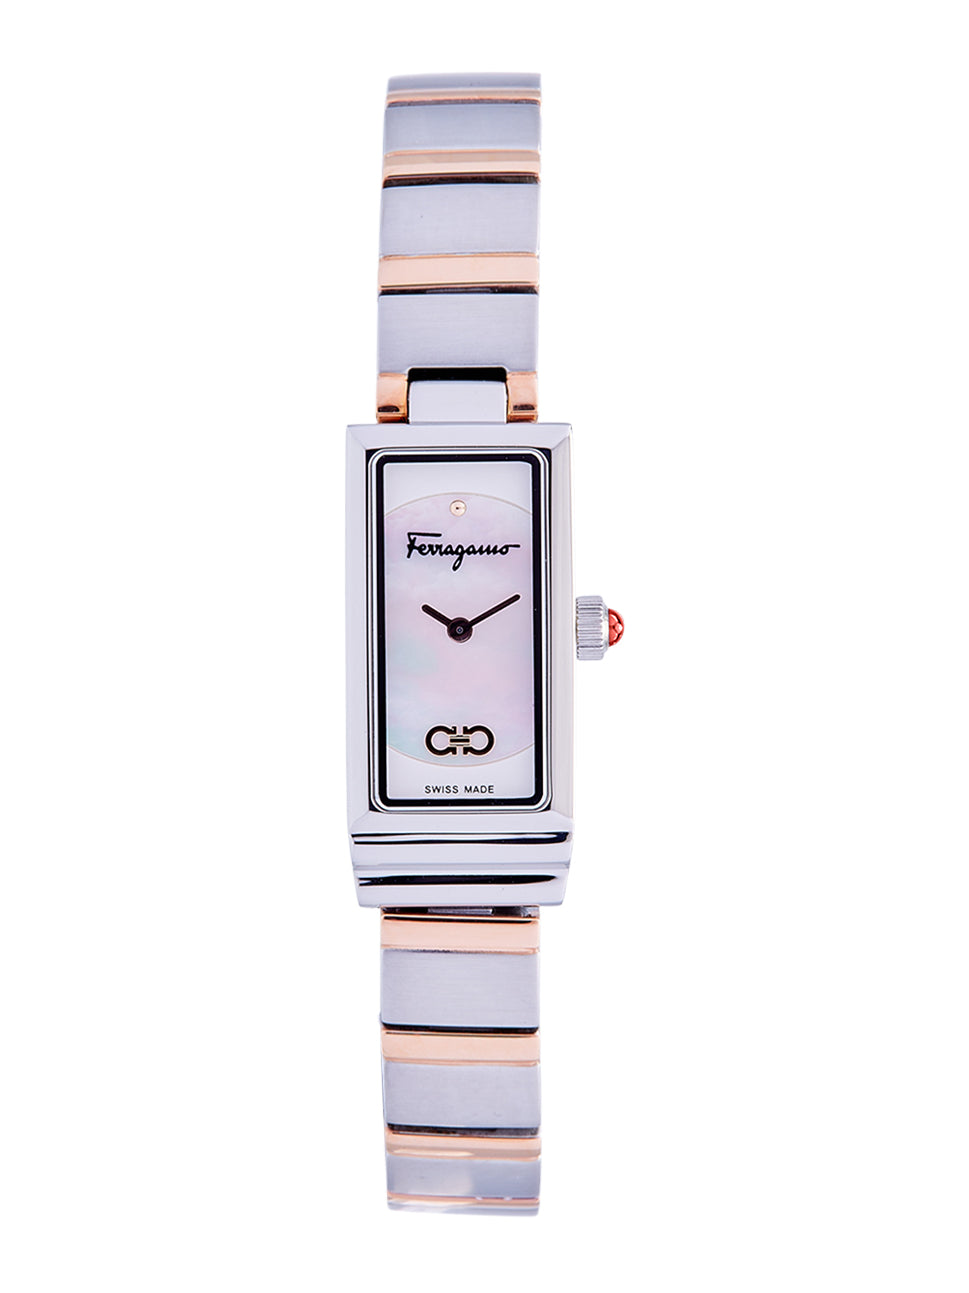 Ferragamo Women's Essential Watch White/Iprg 14x33mm SFMK00422